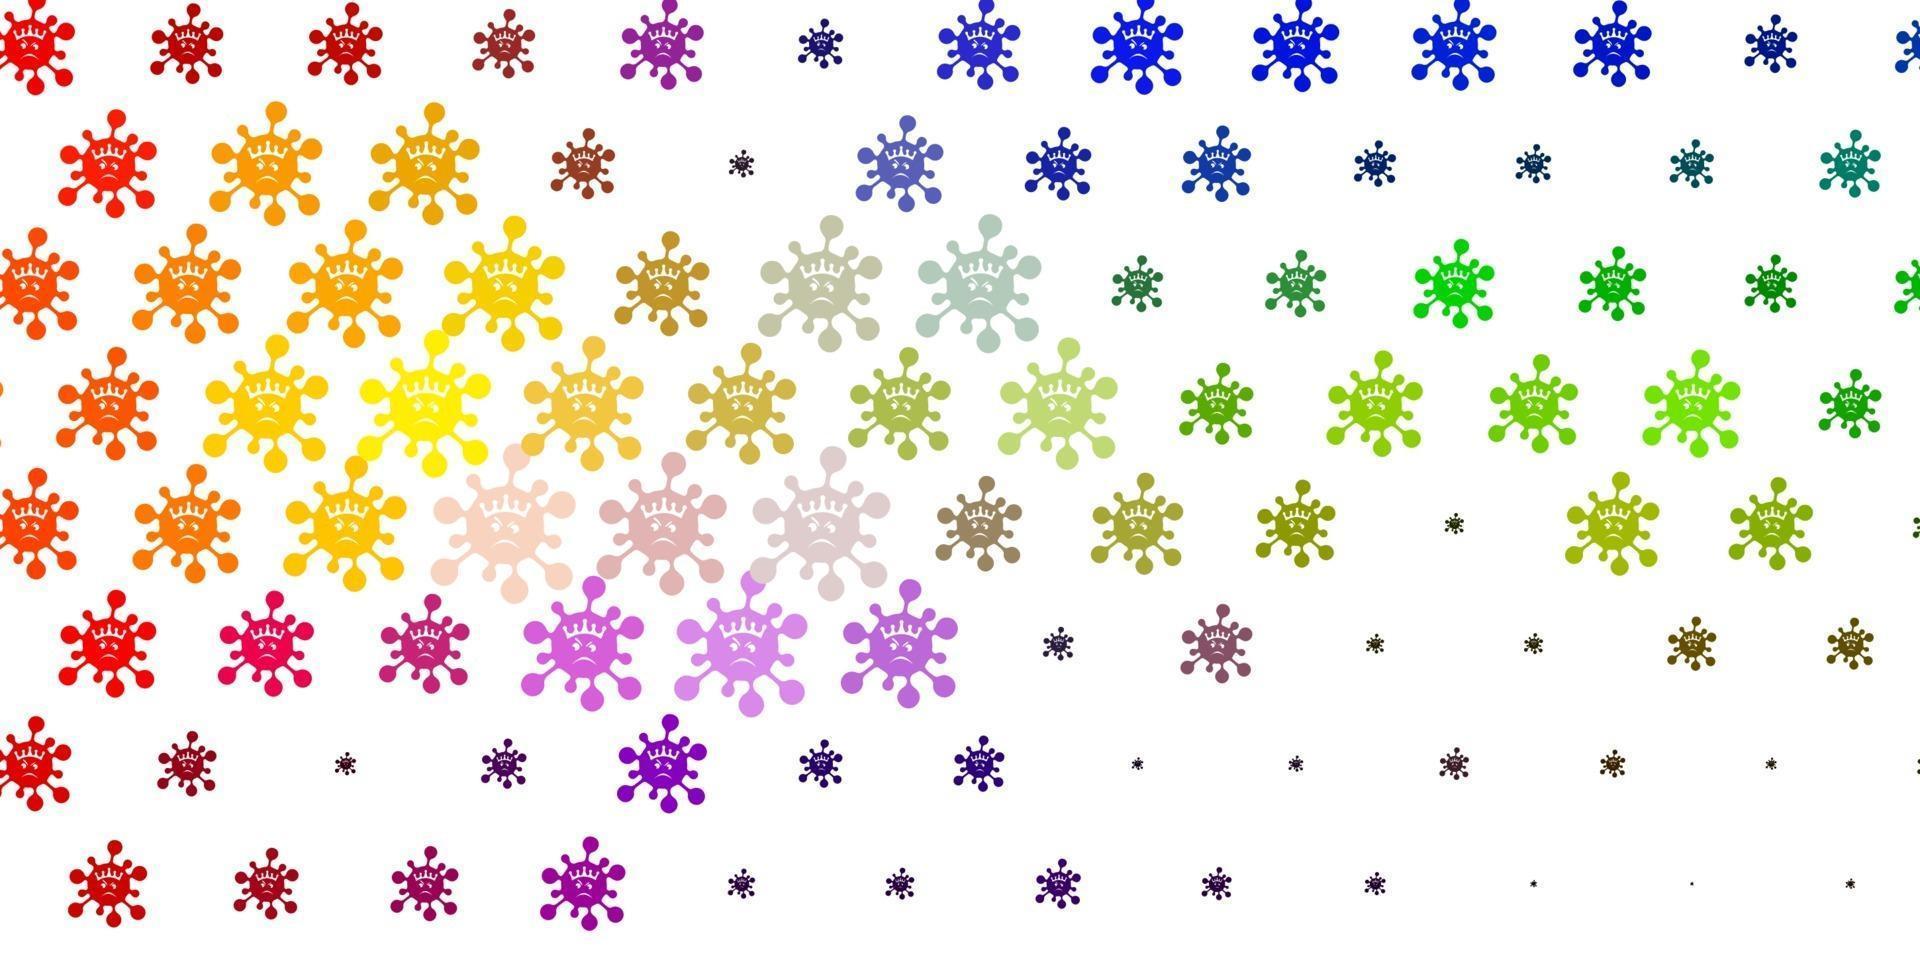 ljus flerfärgad vektorbakgrund med covid-19 symboler. vektor